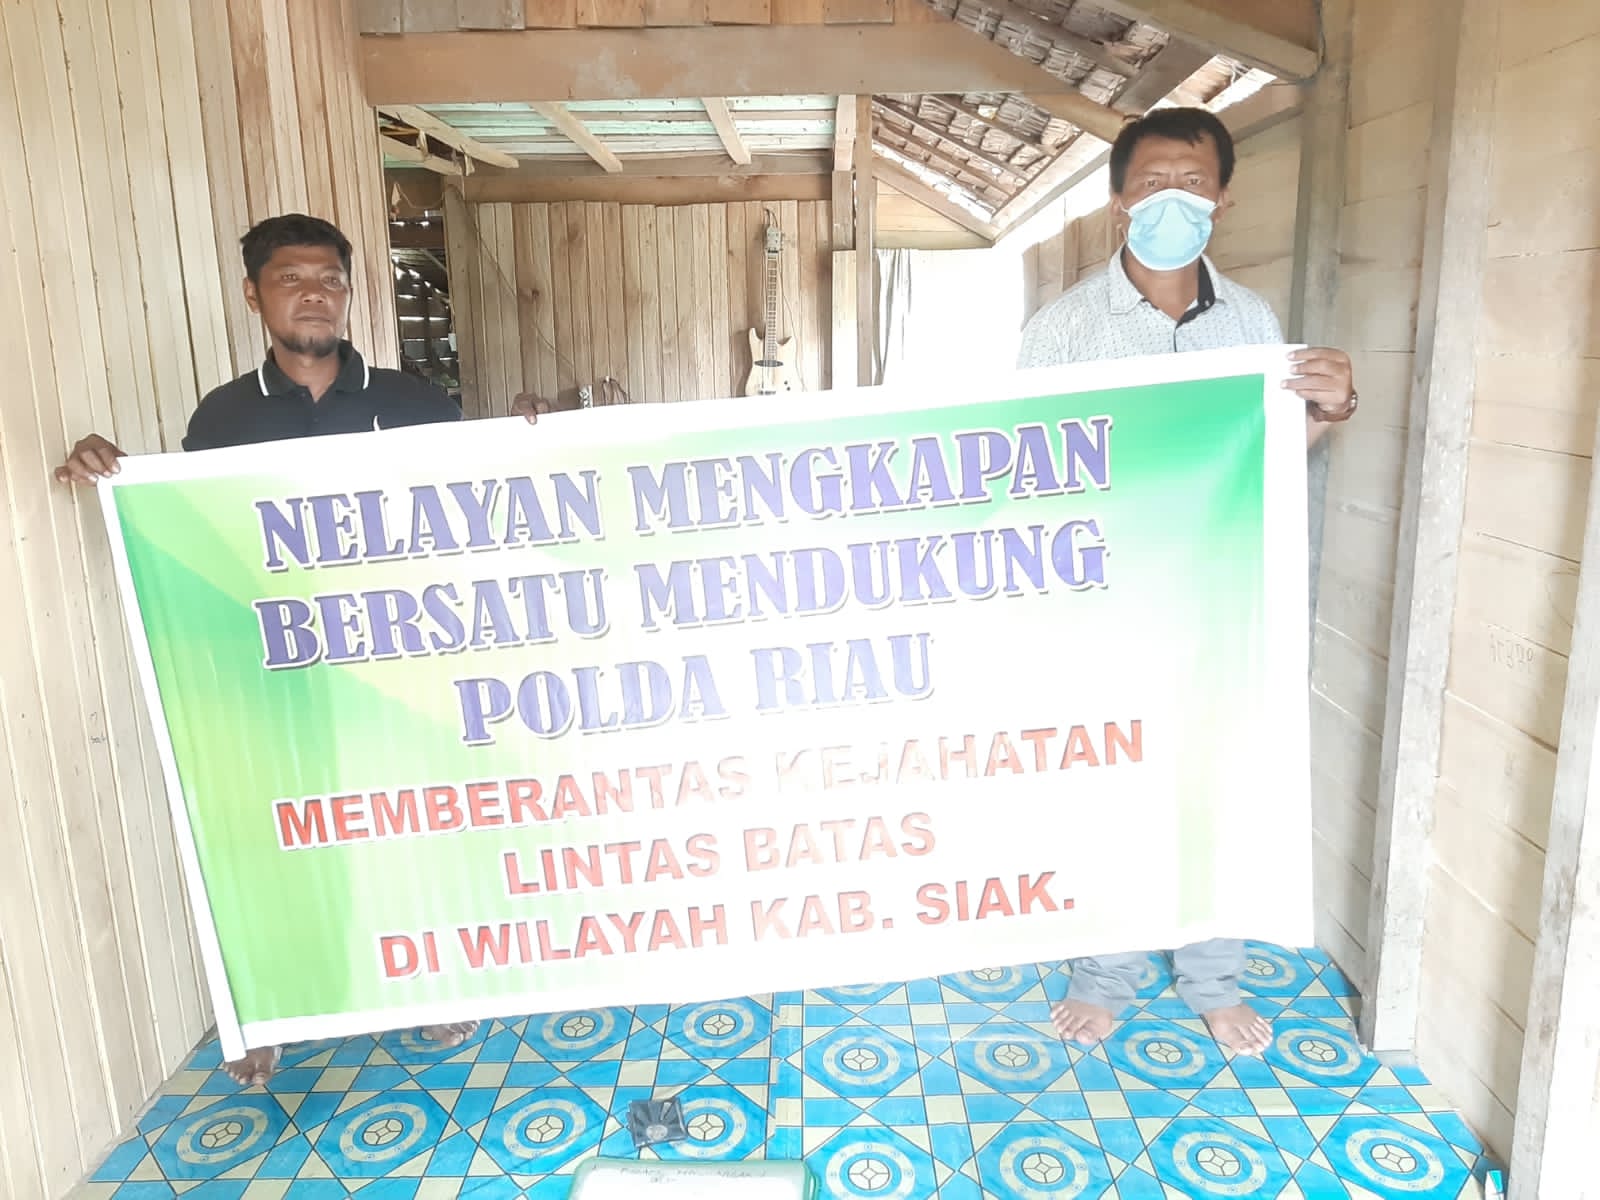 Kelompok Nelayan Mengkapan Bersatu Siak Dukung Polda Riau Dalam Brantas Kejahatan